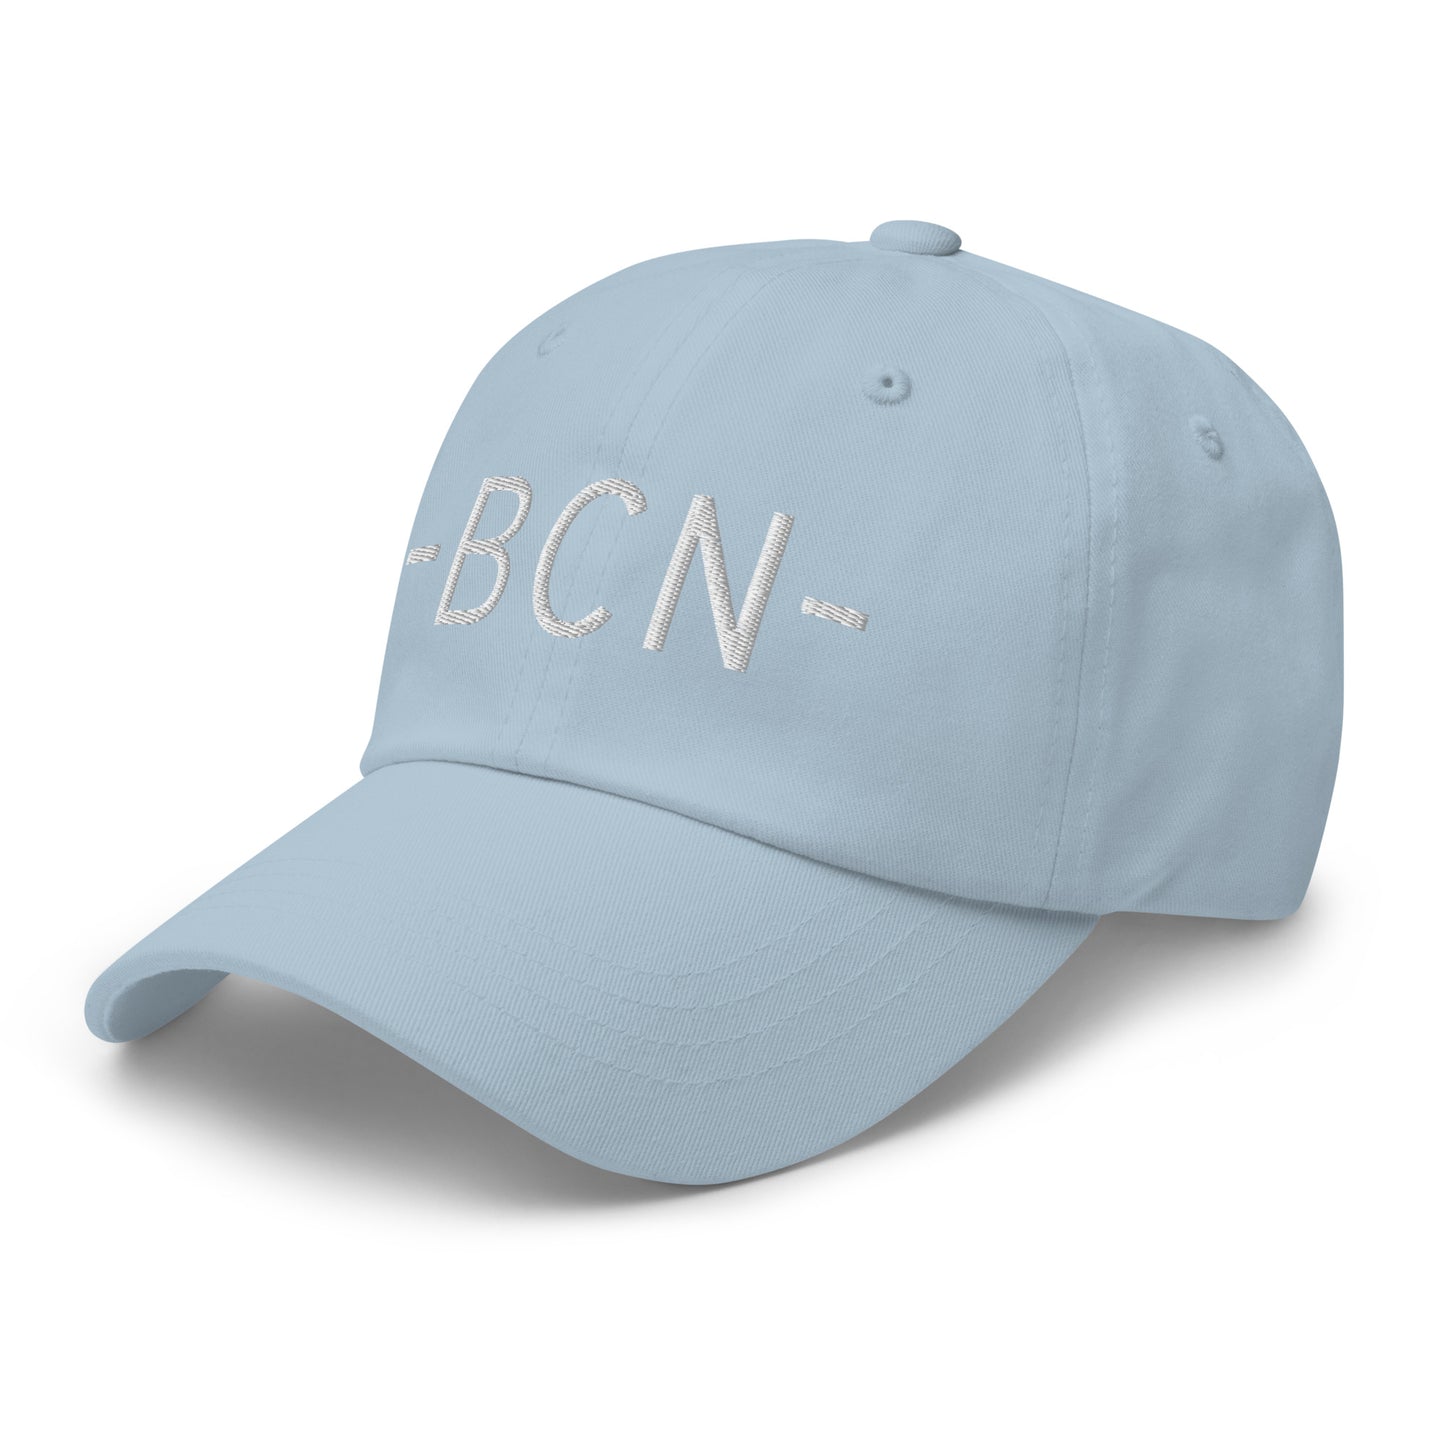 Souvenir Baseball Cap - White • BCN Barcelona • YHM Designs - Image 28